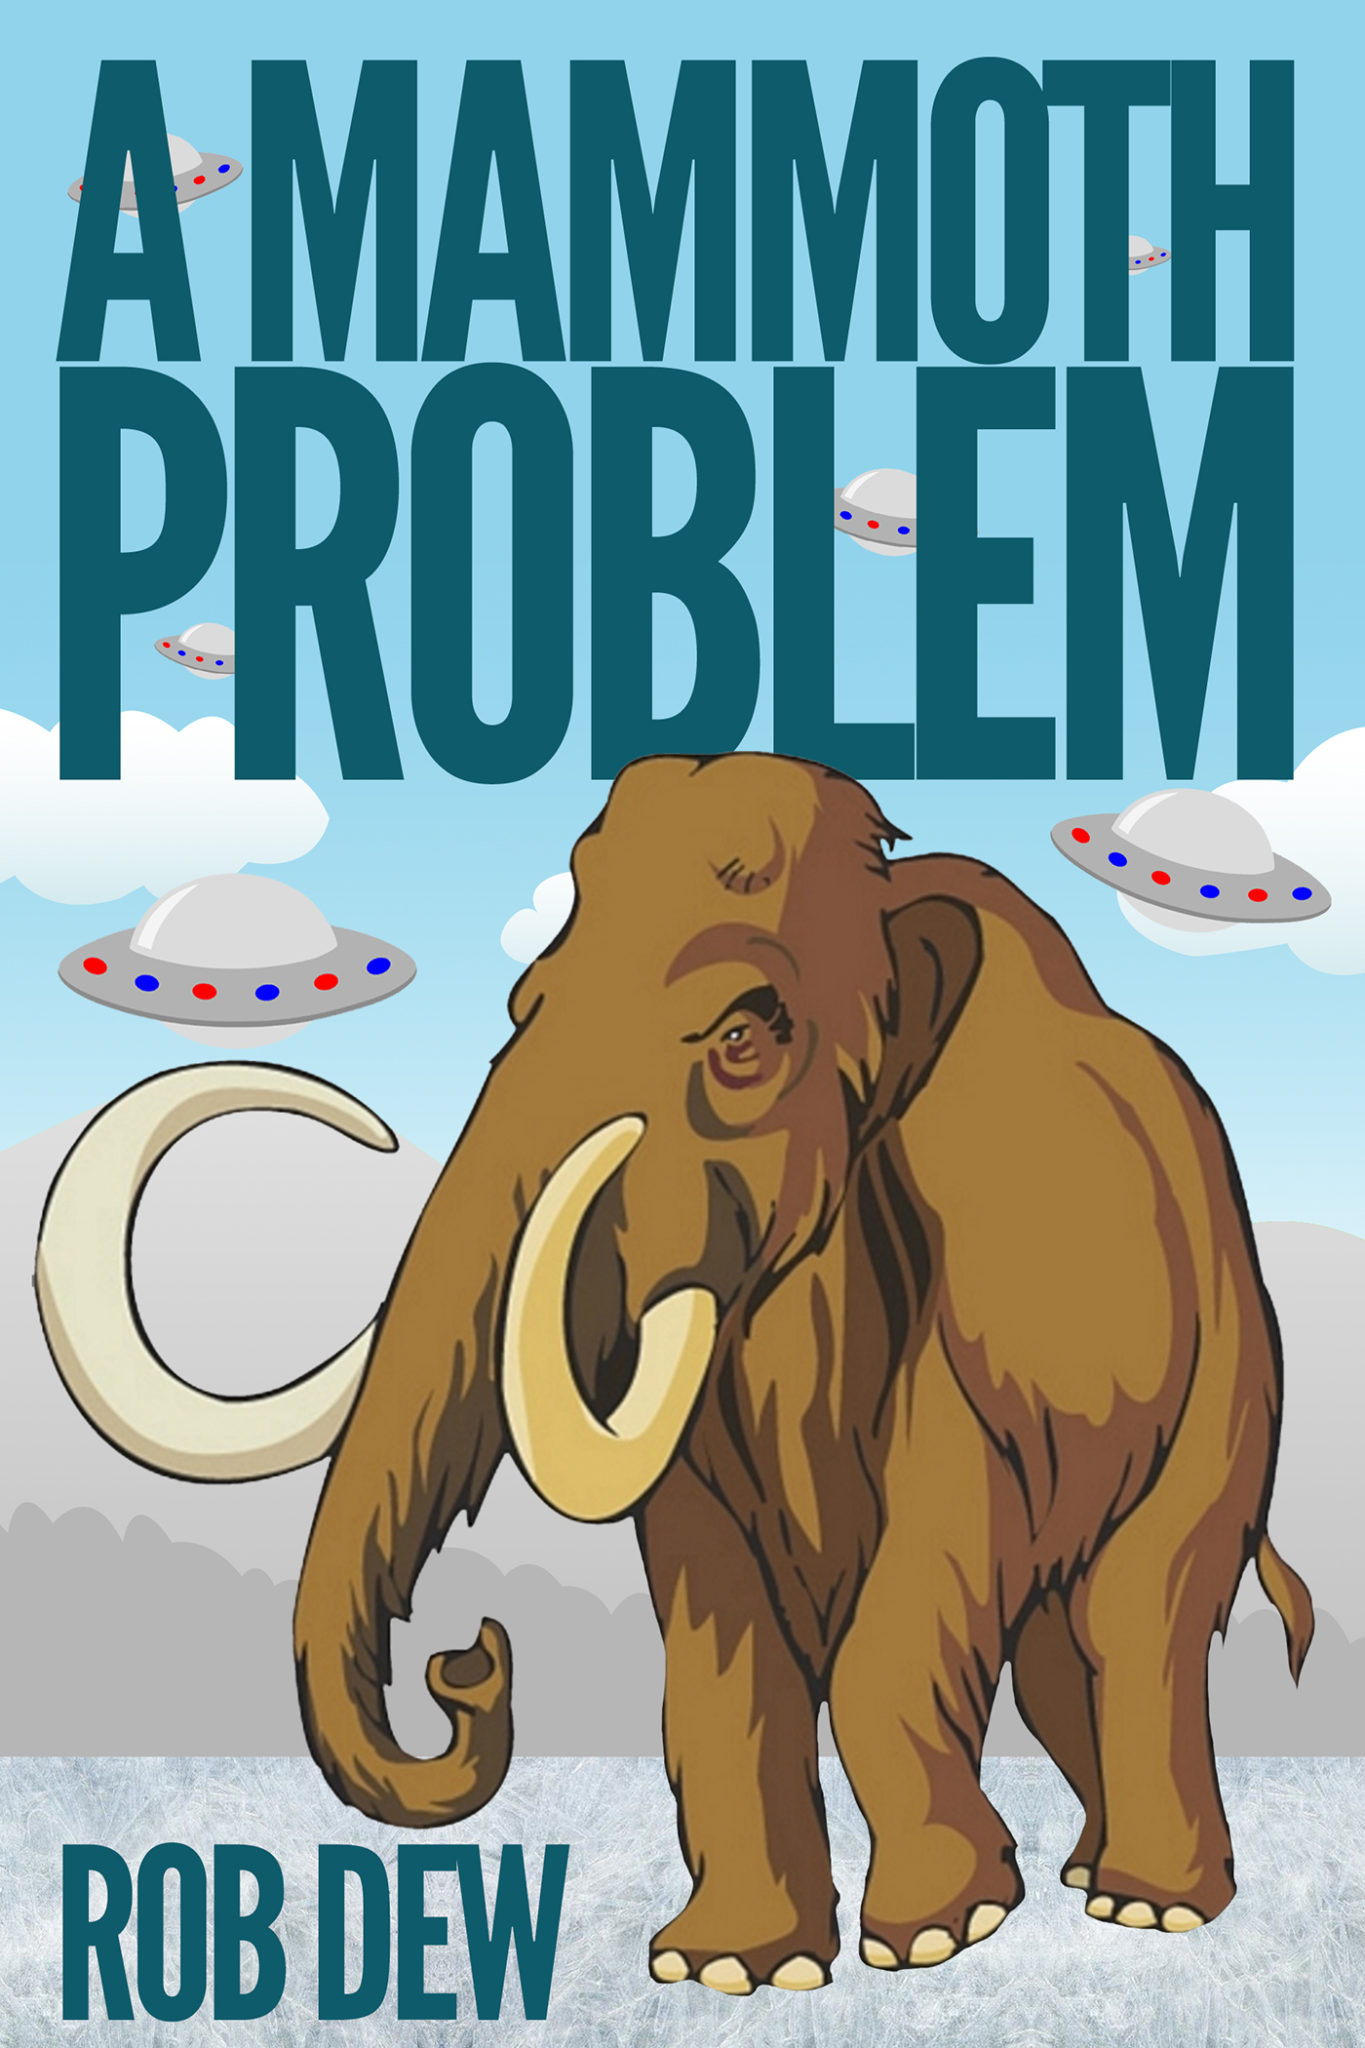 A Mammoth Problem by Rob Dew